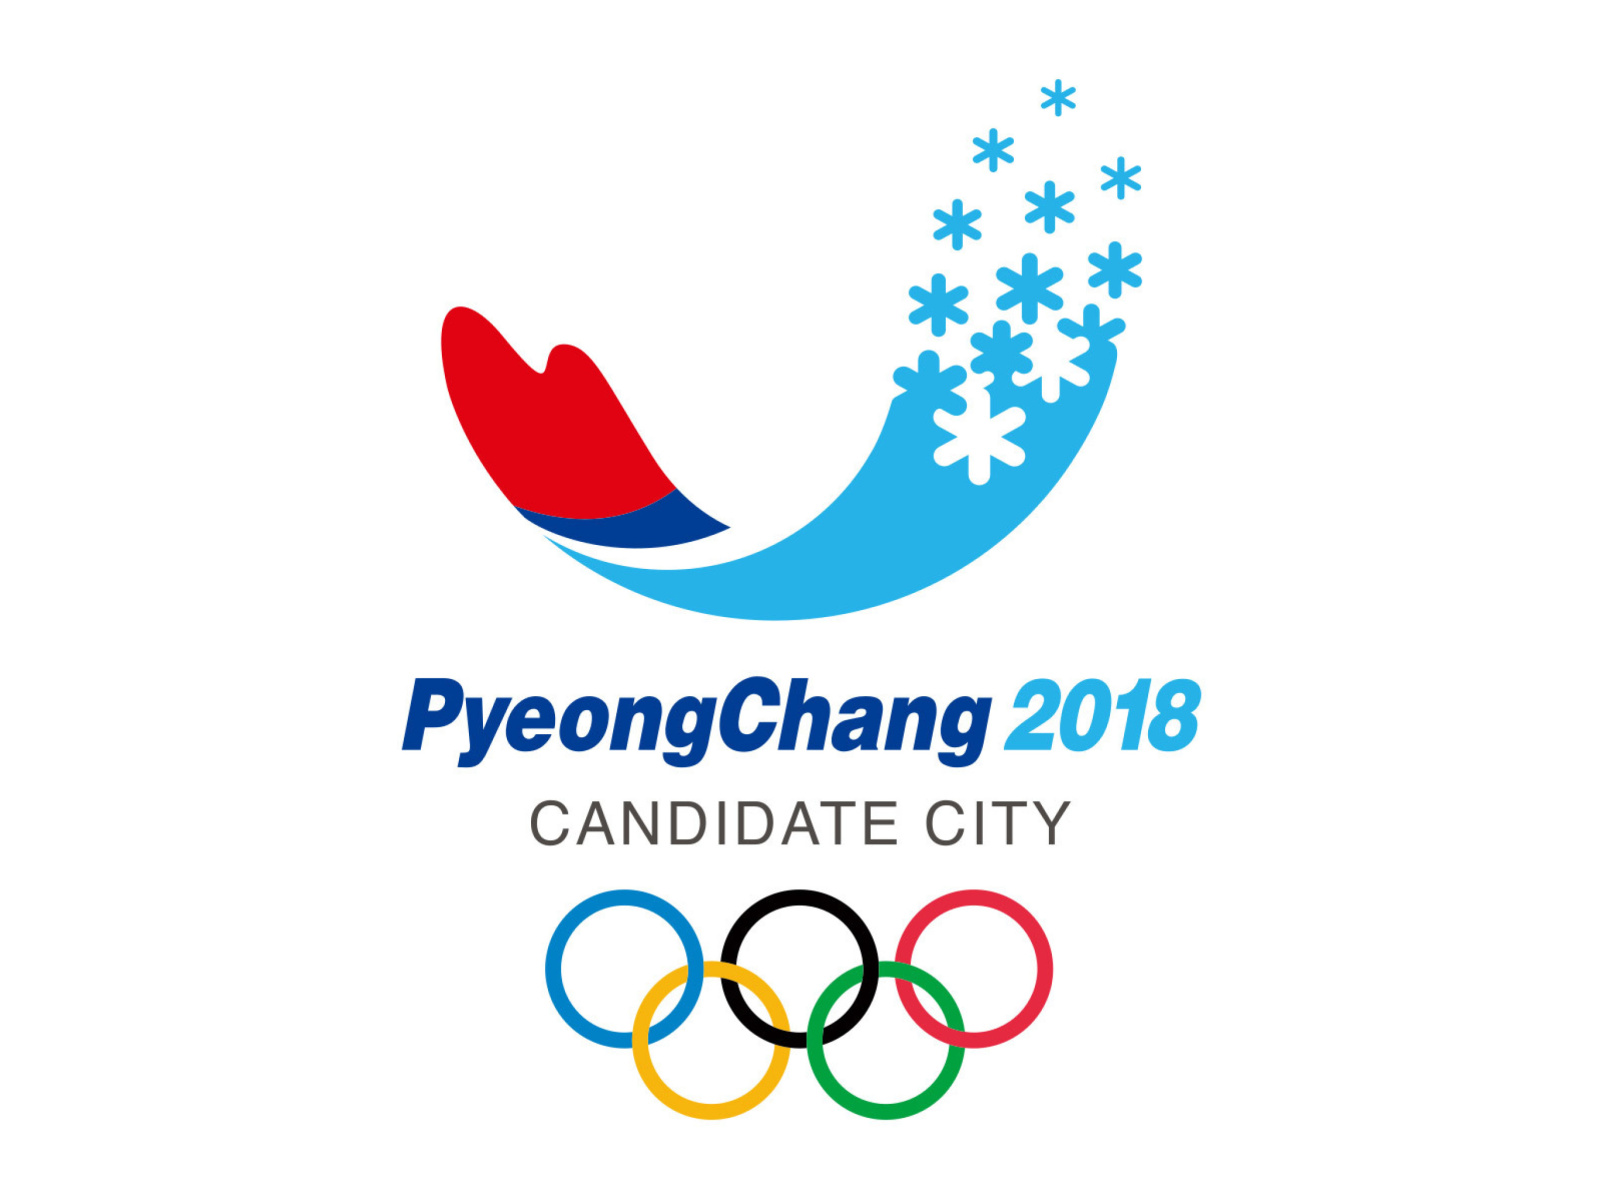 Sfondi PyeongChang 2018 Olympics 1600x1200